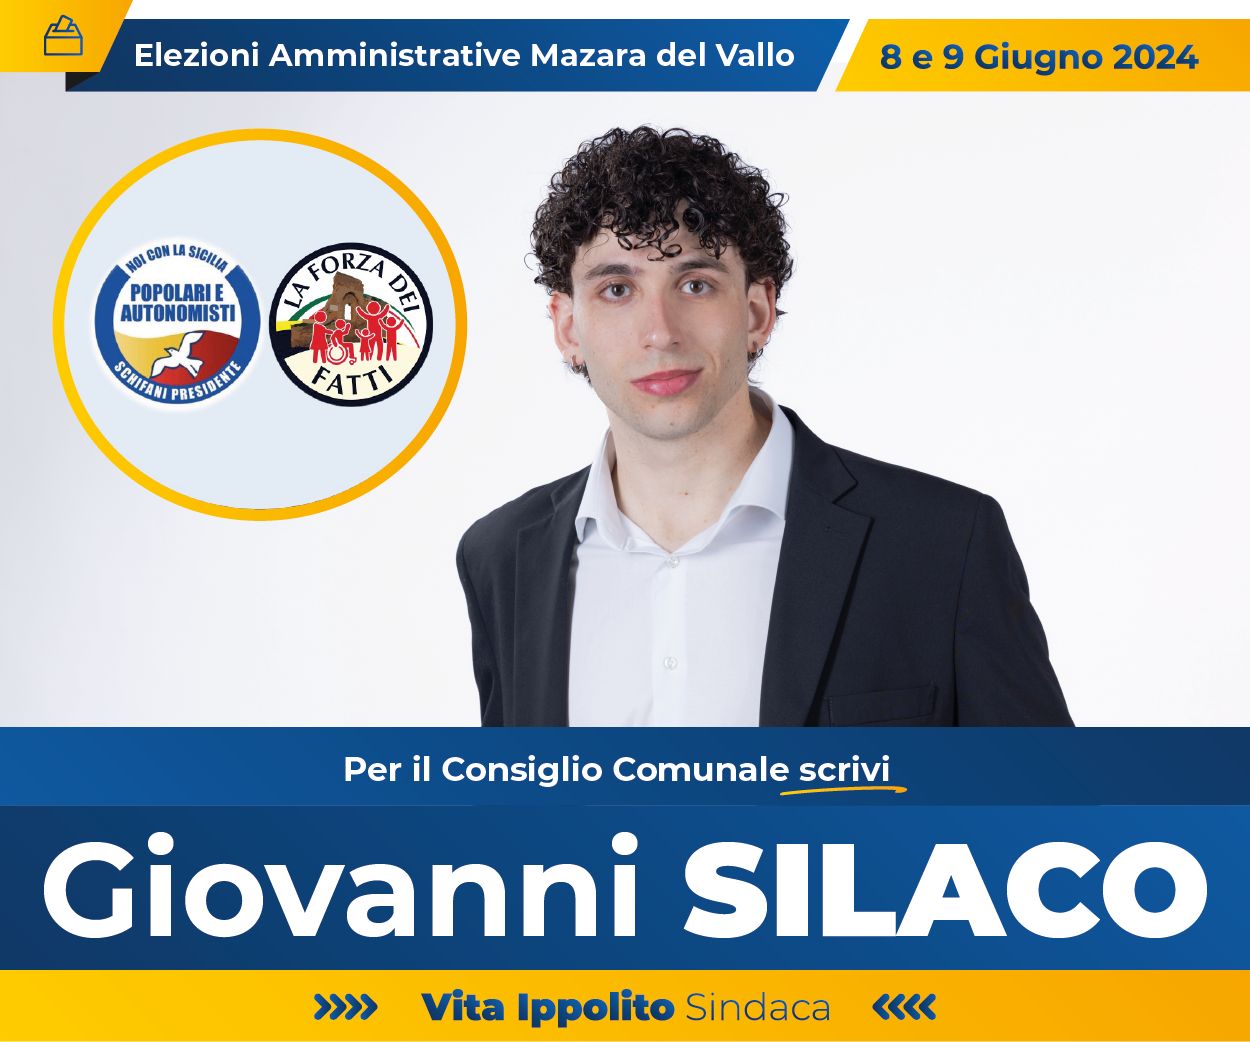 Giovanni Silaco